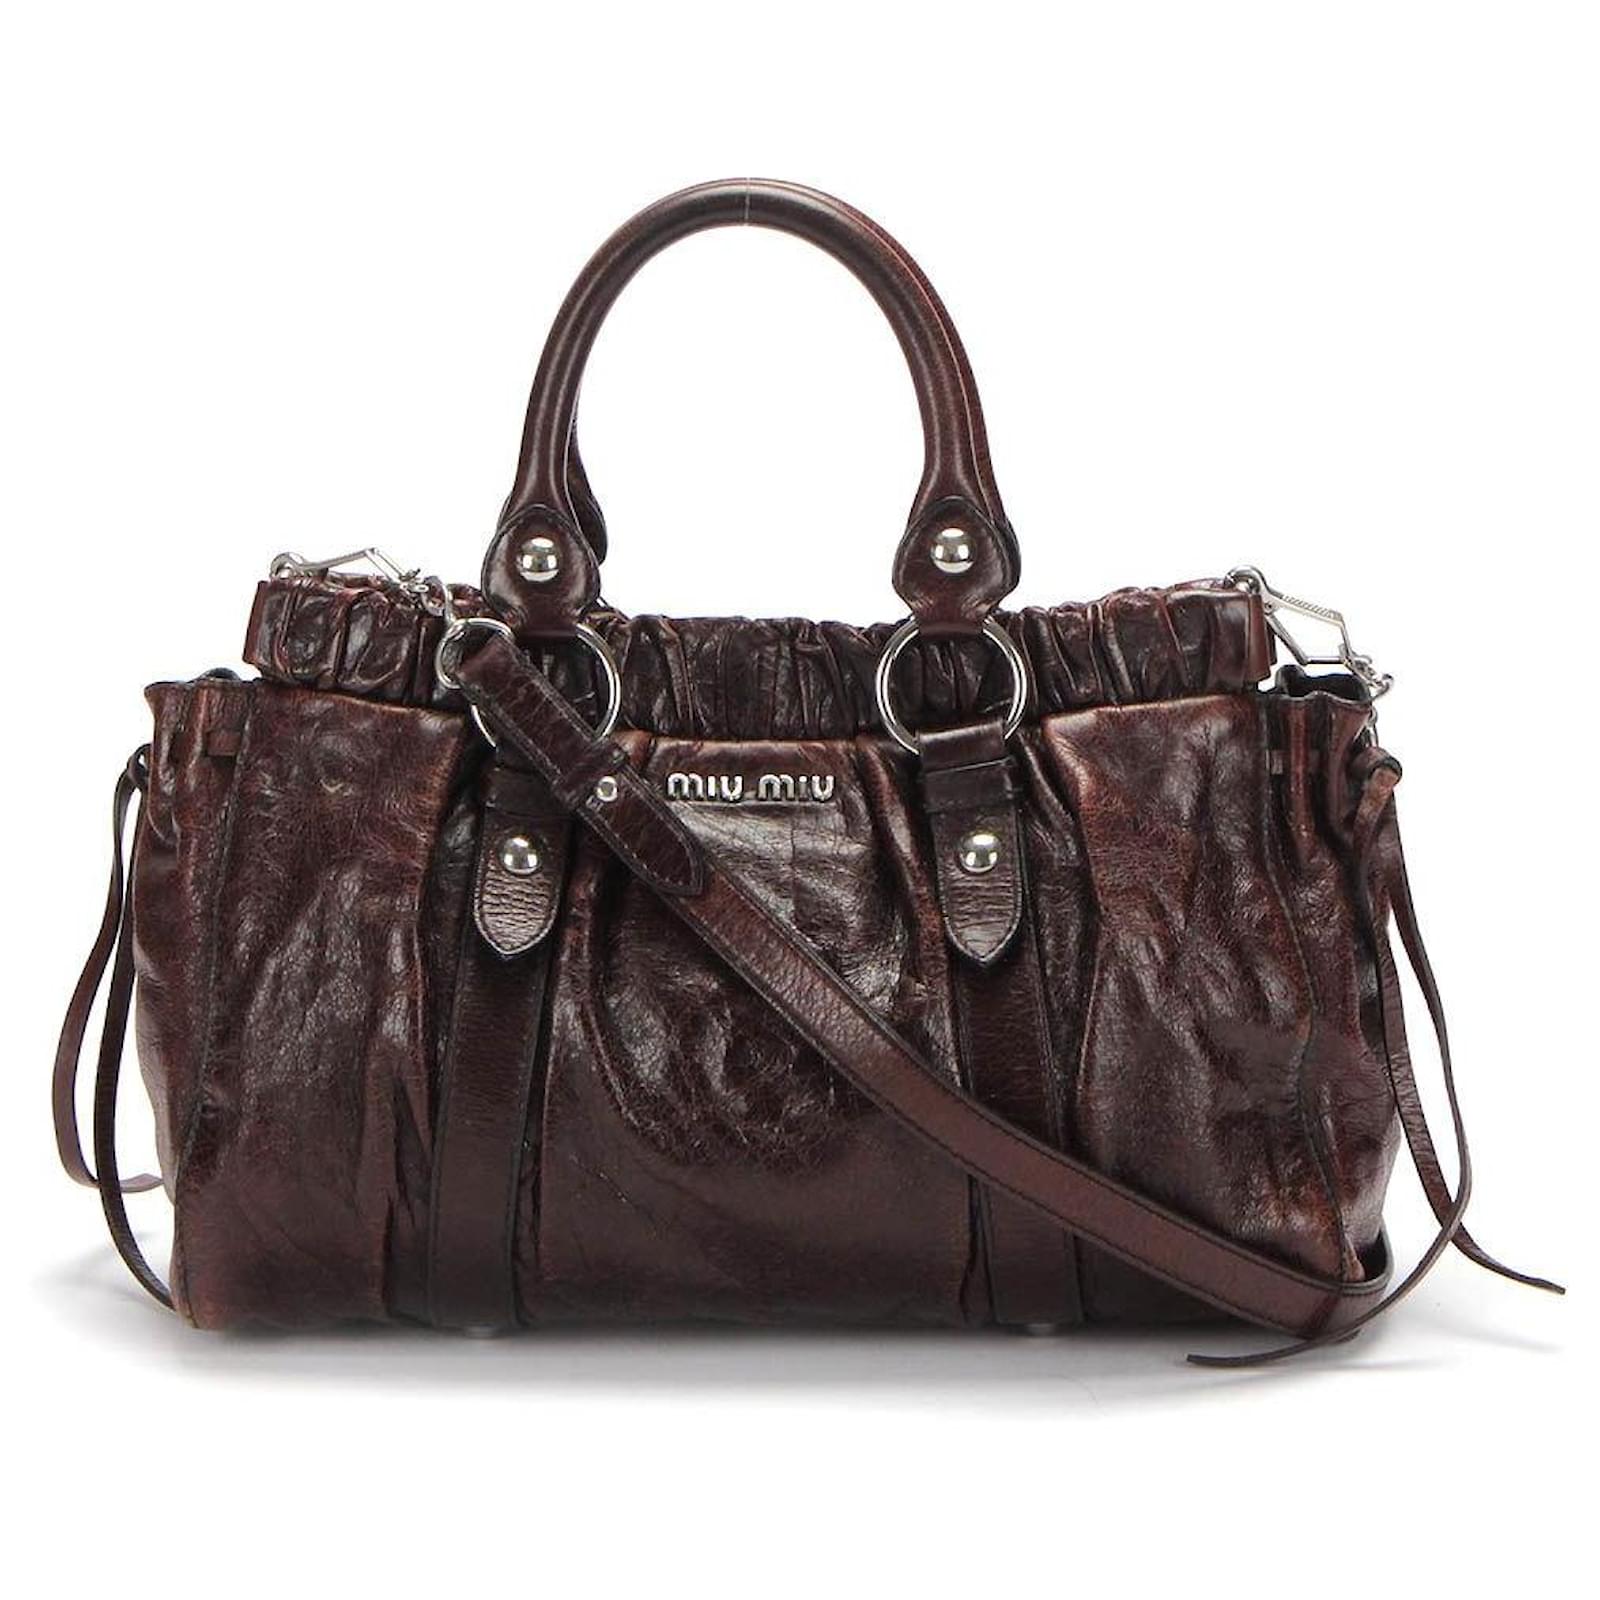 Miu Miu 2-Way Brown Leather Bag